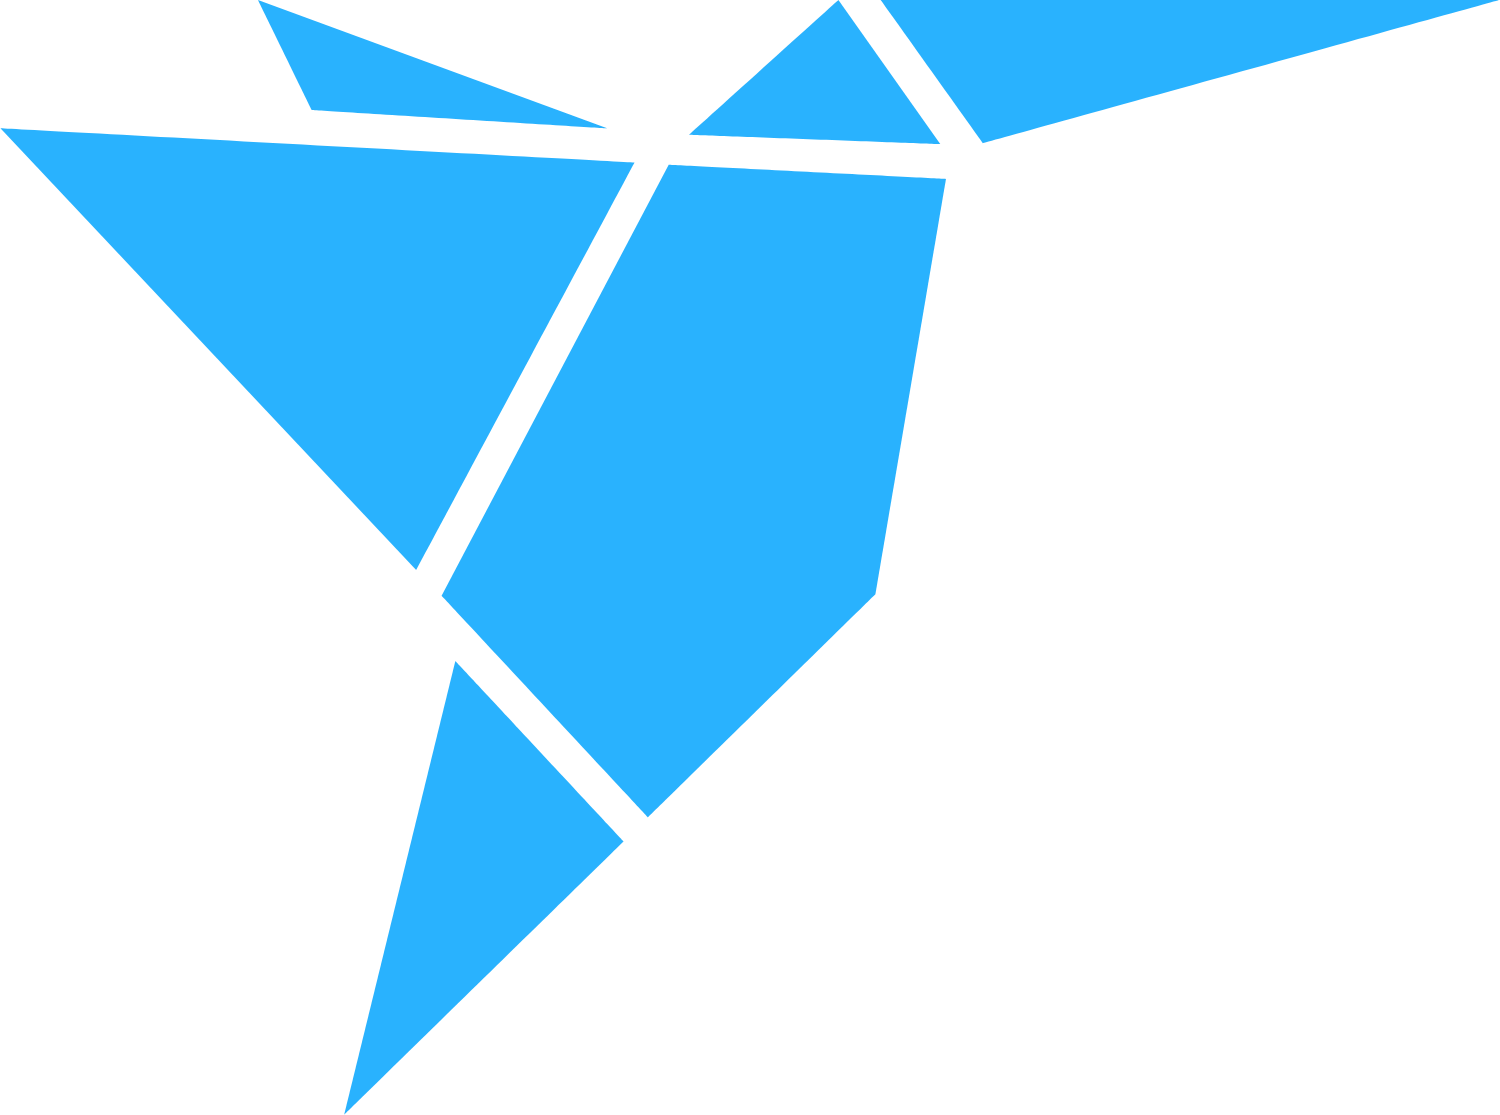 freelancer.com logo (PNG transparent)